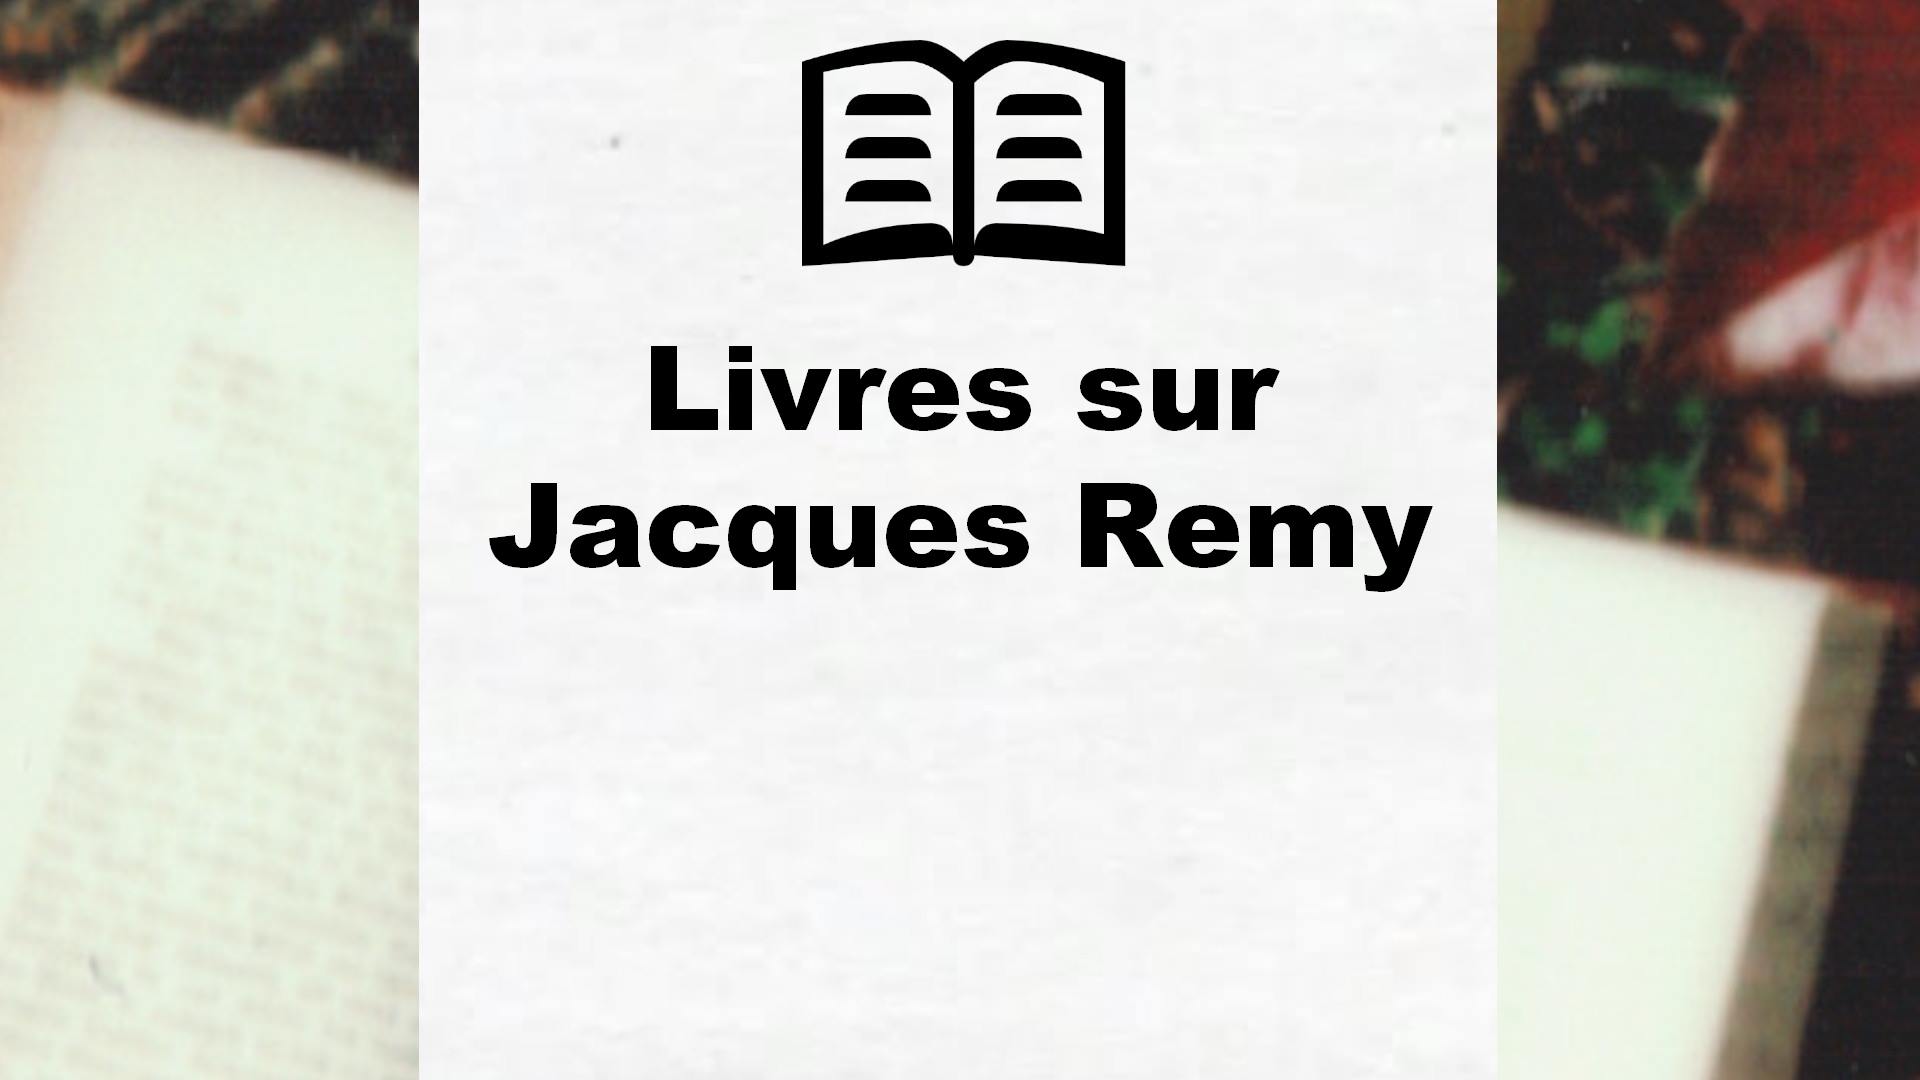 Livres sur Jacques Remy